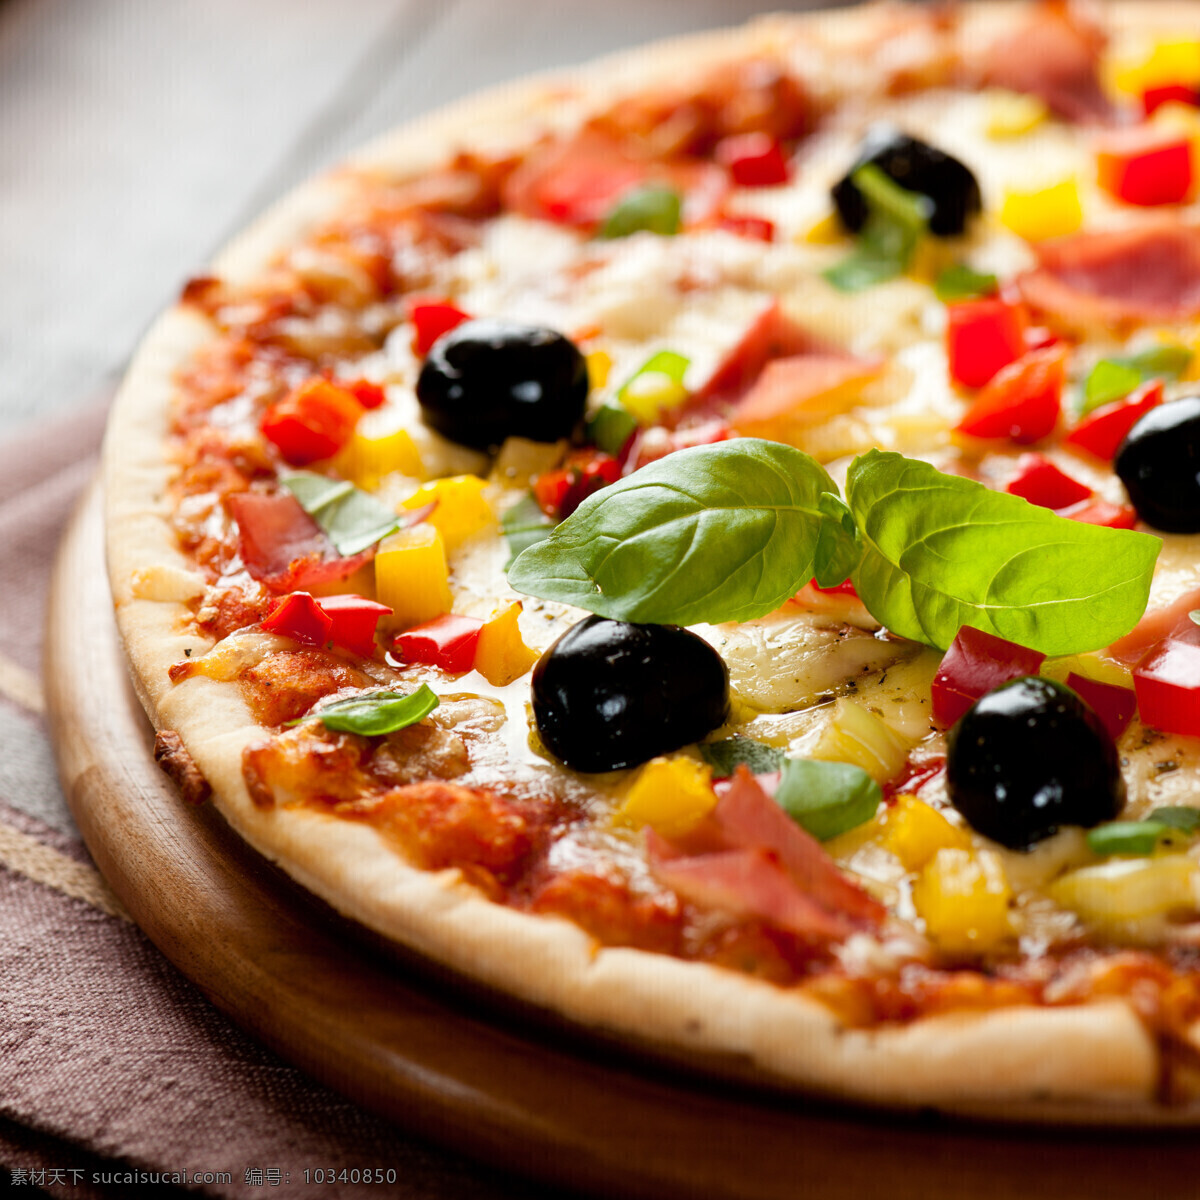 意大利 披萨 意大利披萨 洋葱 番茄 西红柿 国外美食 美味 外国美食 餐饮美食